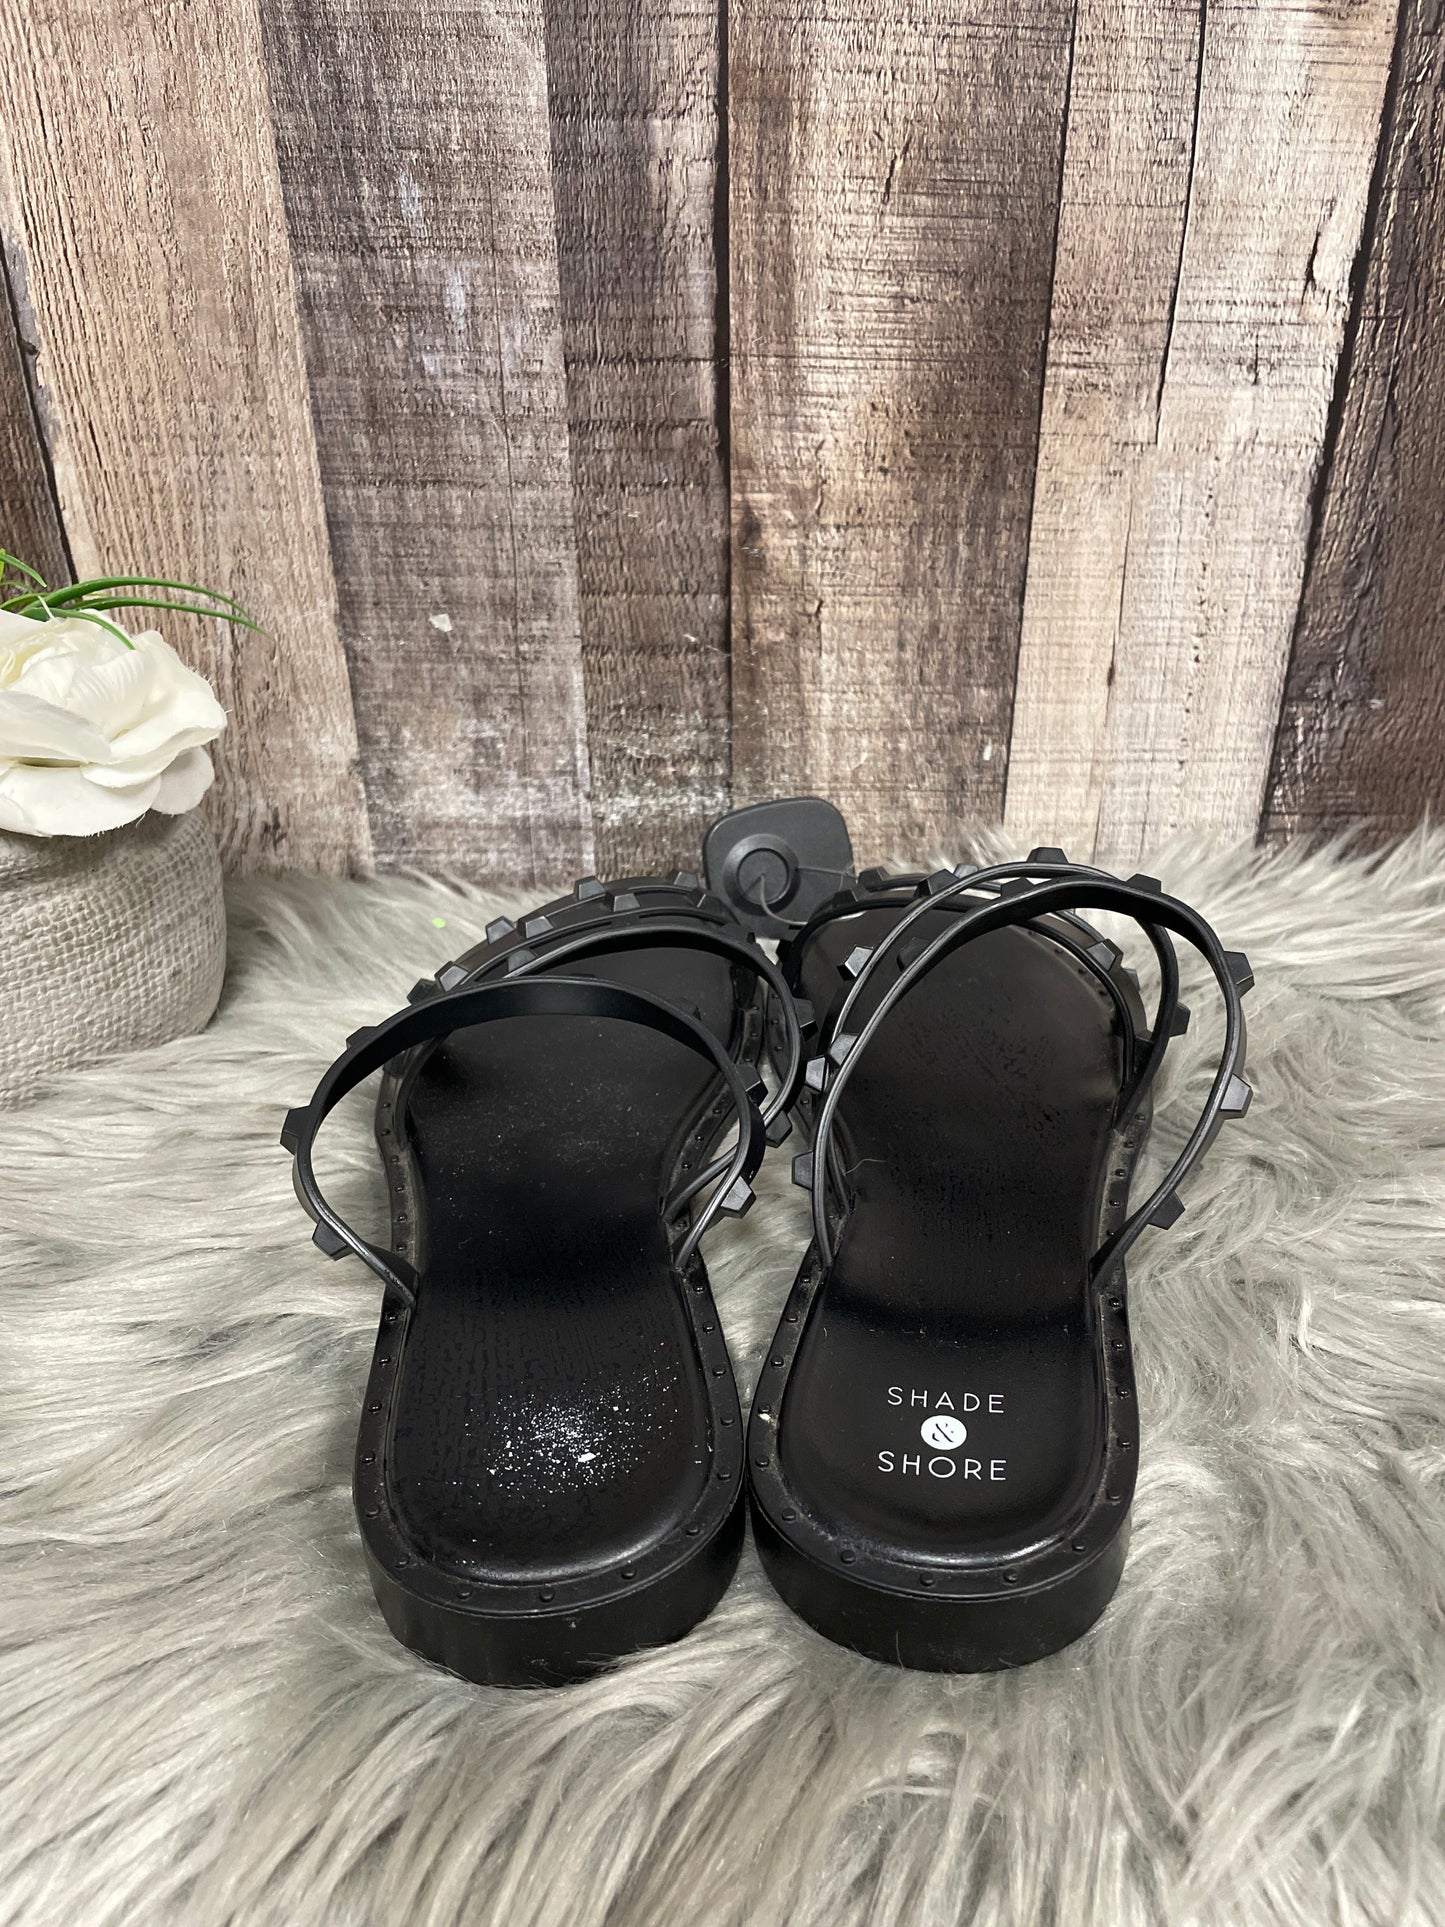 Black Sandals Flats Shade & Shore, Size 8